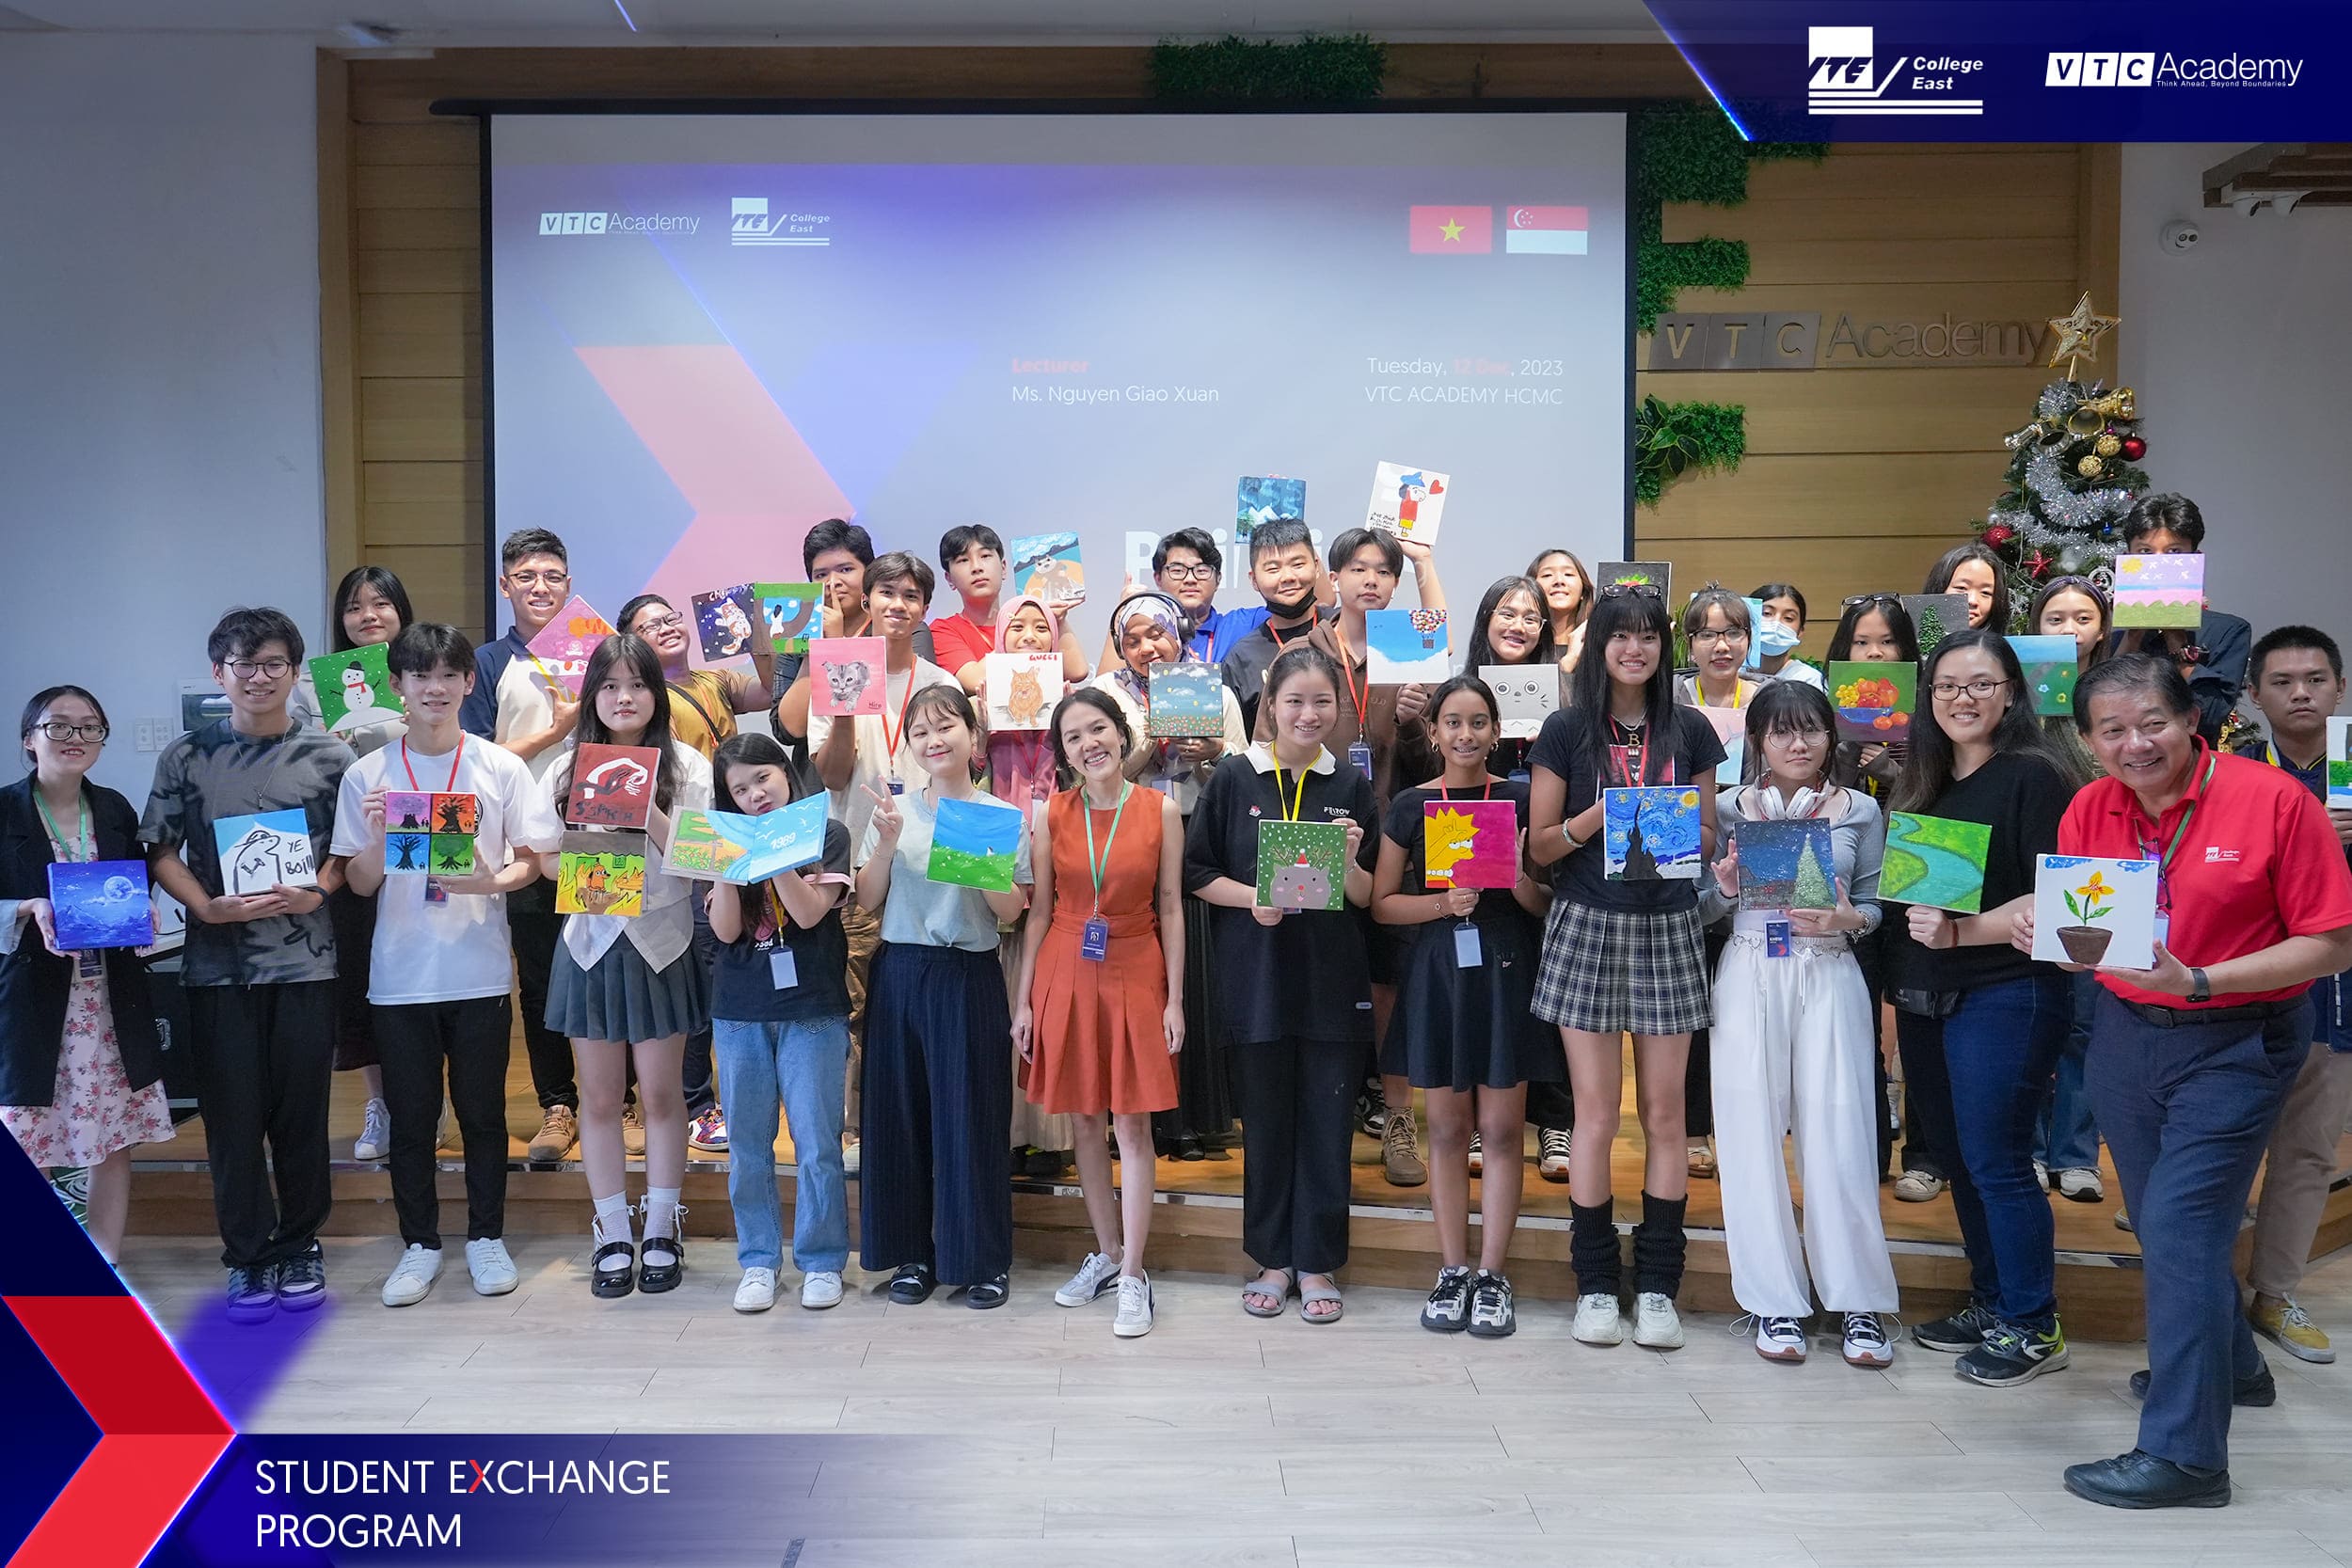 Hành trình gắn kết: trường ITE College East - Singapore trao đổi học tập tại VTC Academy trong 02 tuần